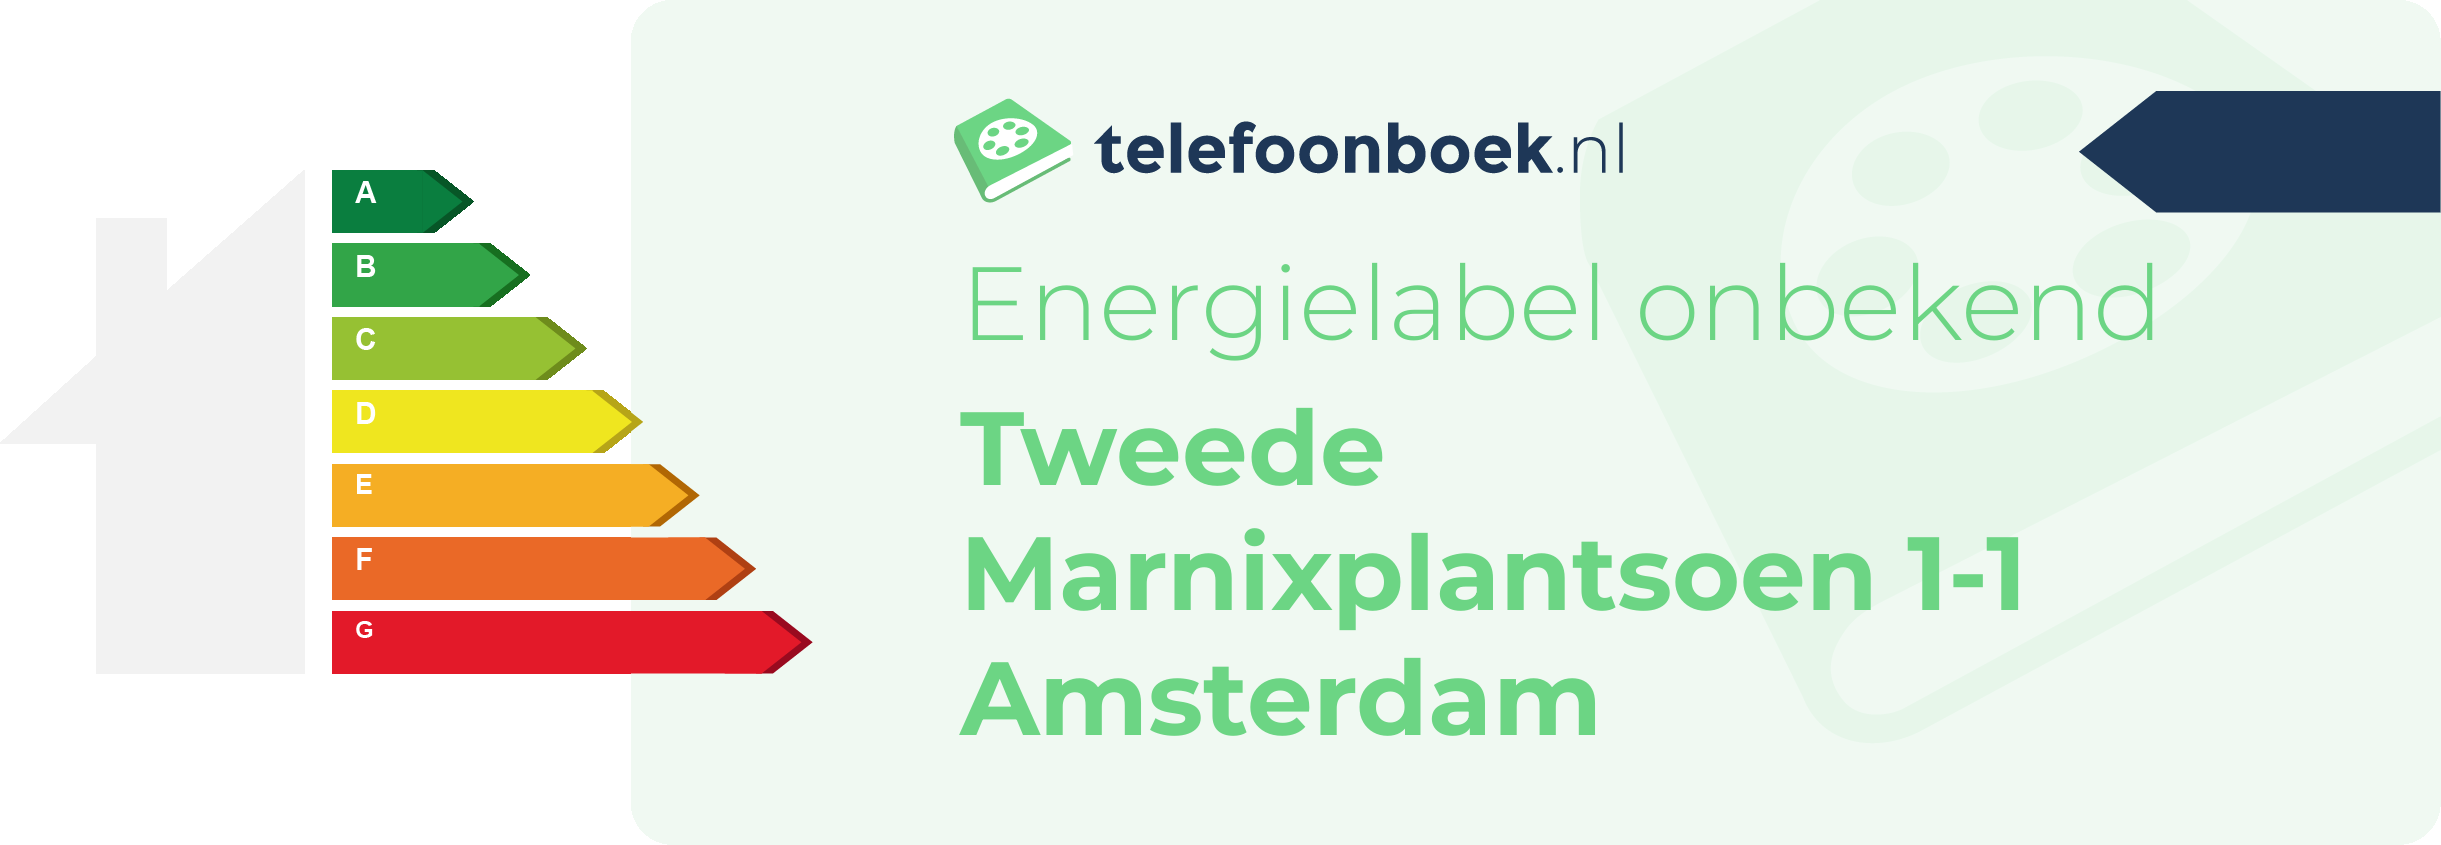 Energielabel Tweede Marnixplantsoen 1-1 Amsterdam